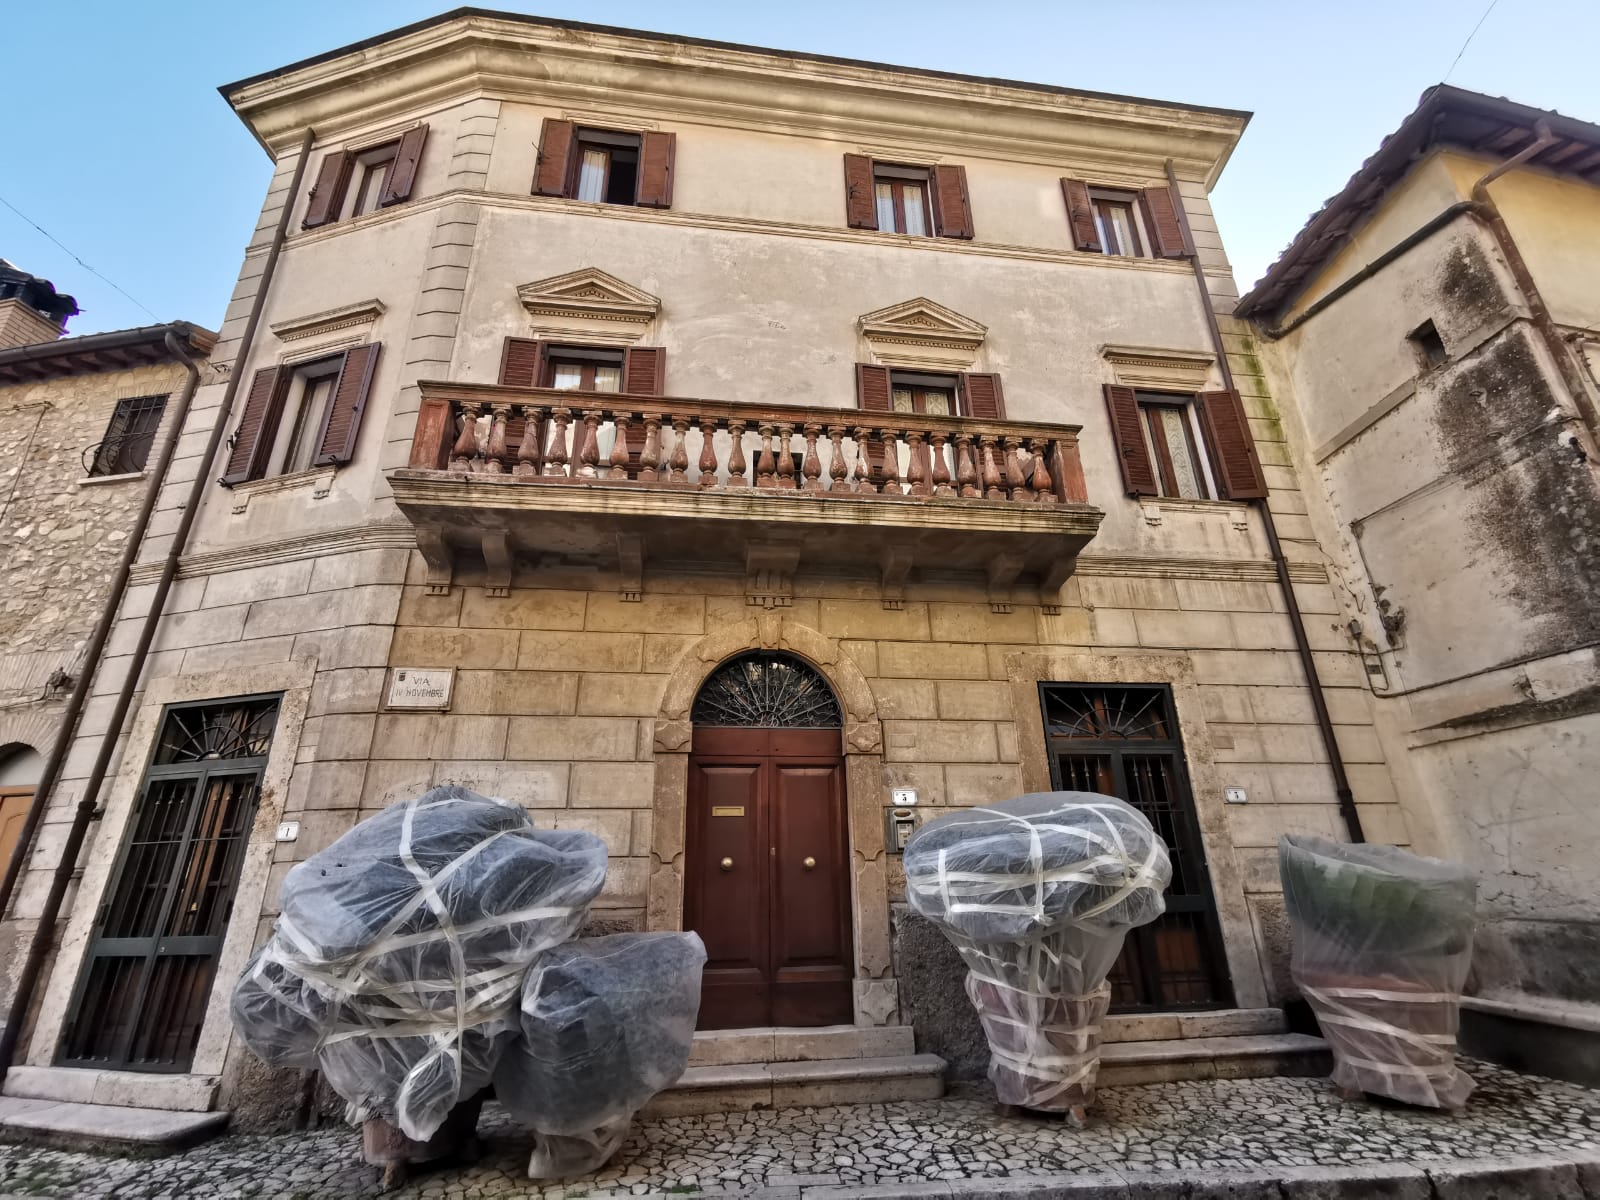 Locale commerciale centro storico di Montecchio, Terni